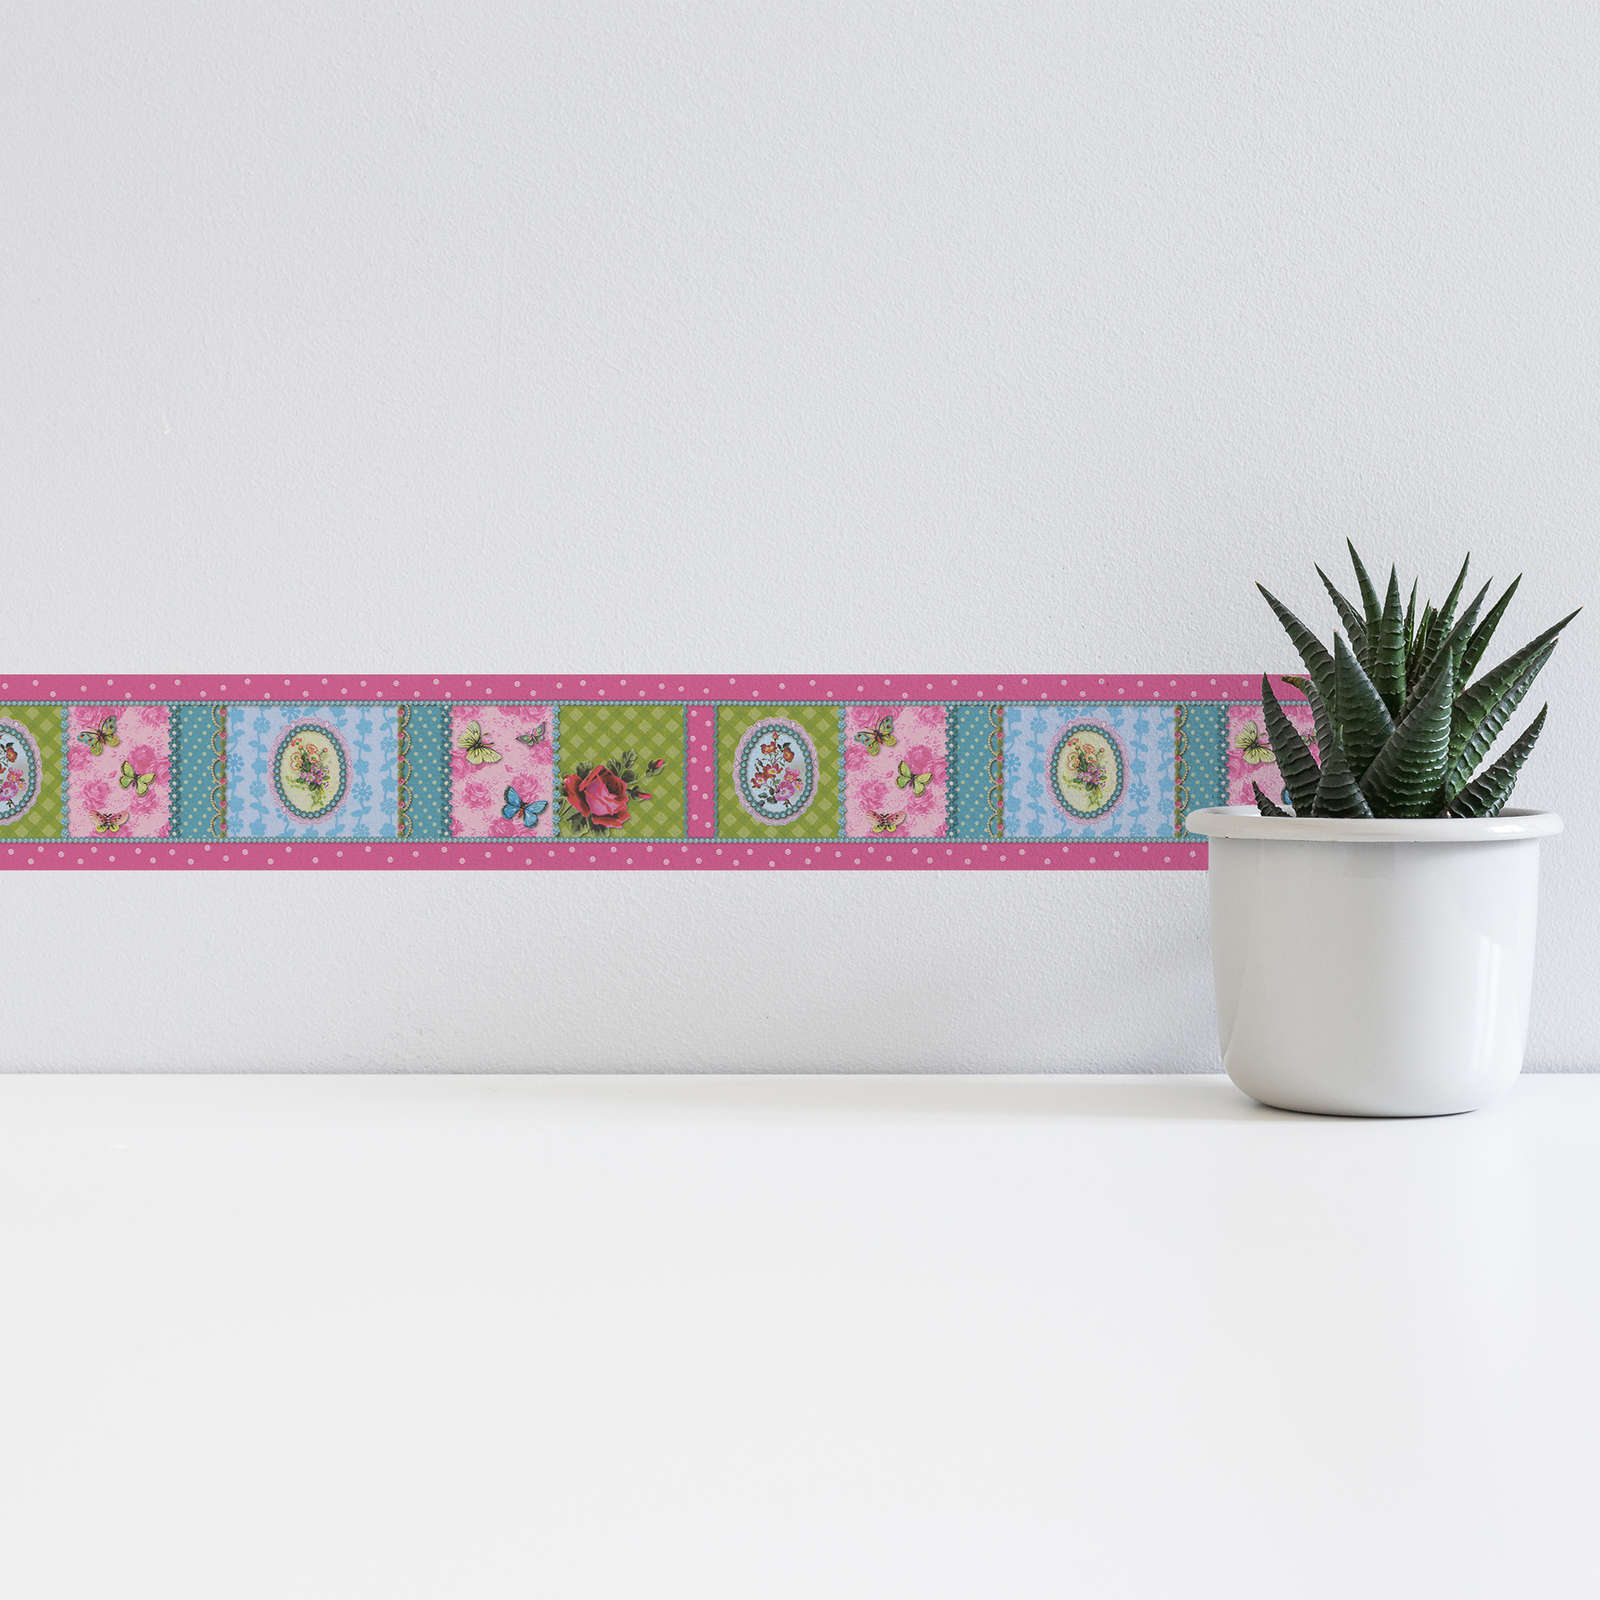             Bordure de papier peint OILILY motif points & fleurs - multicolore
        